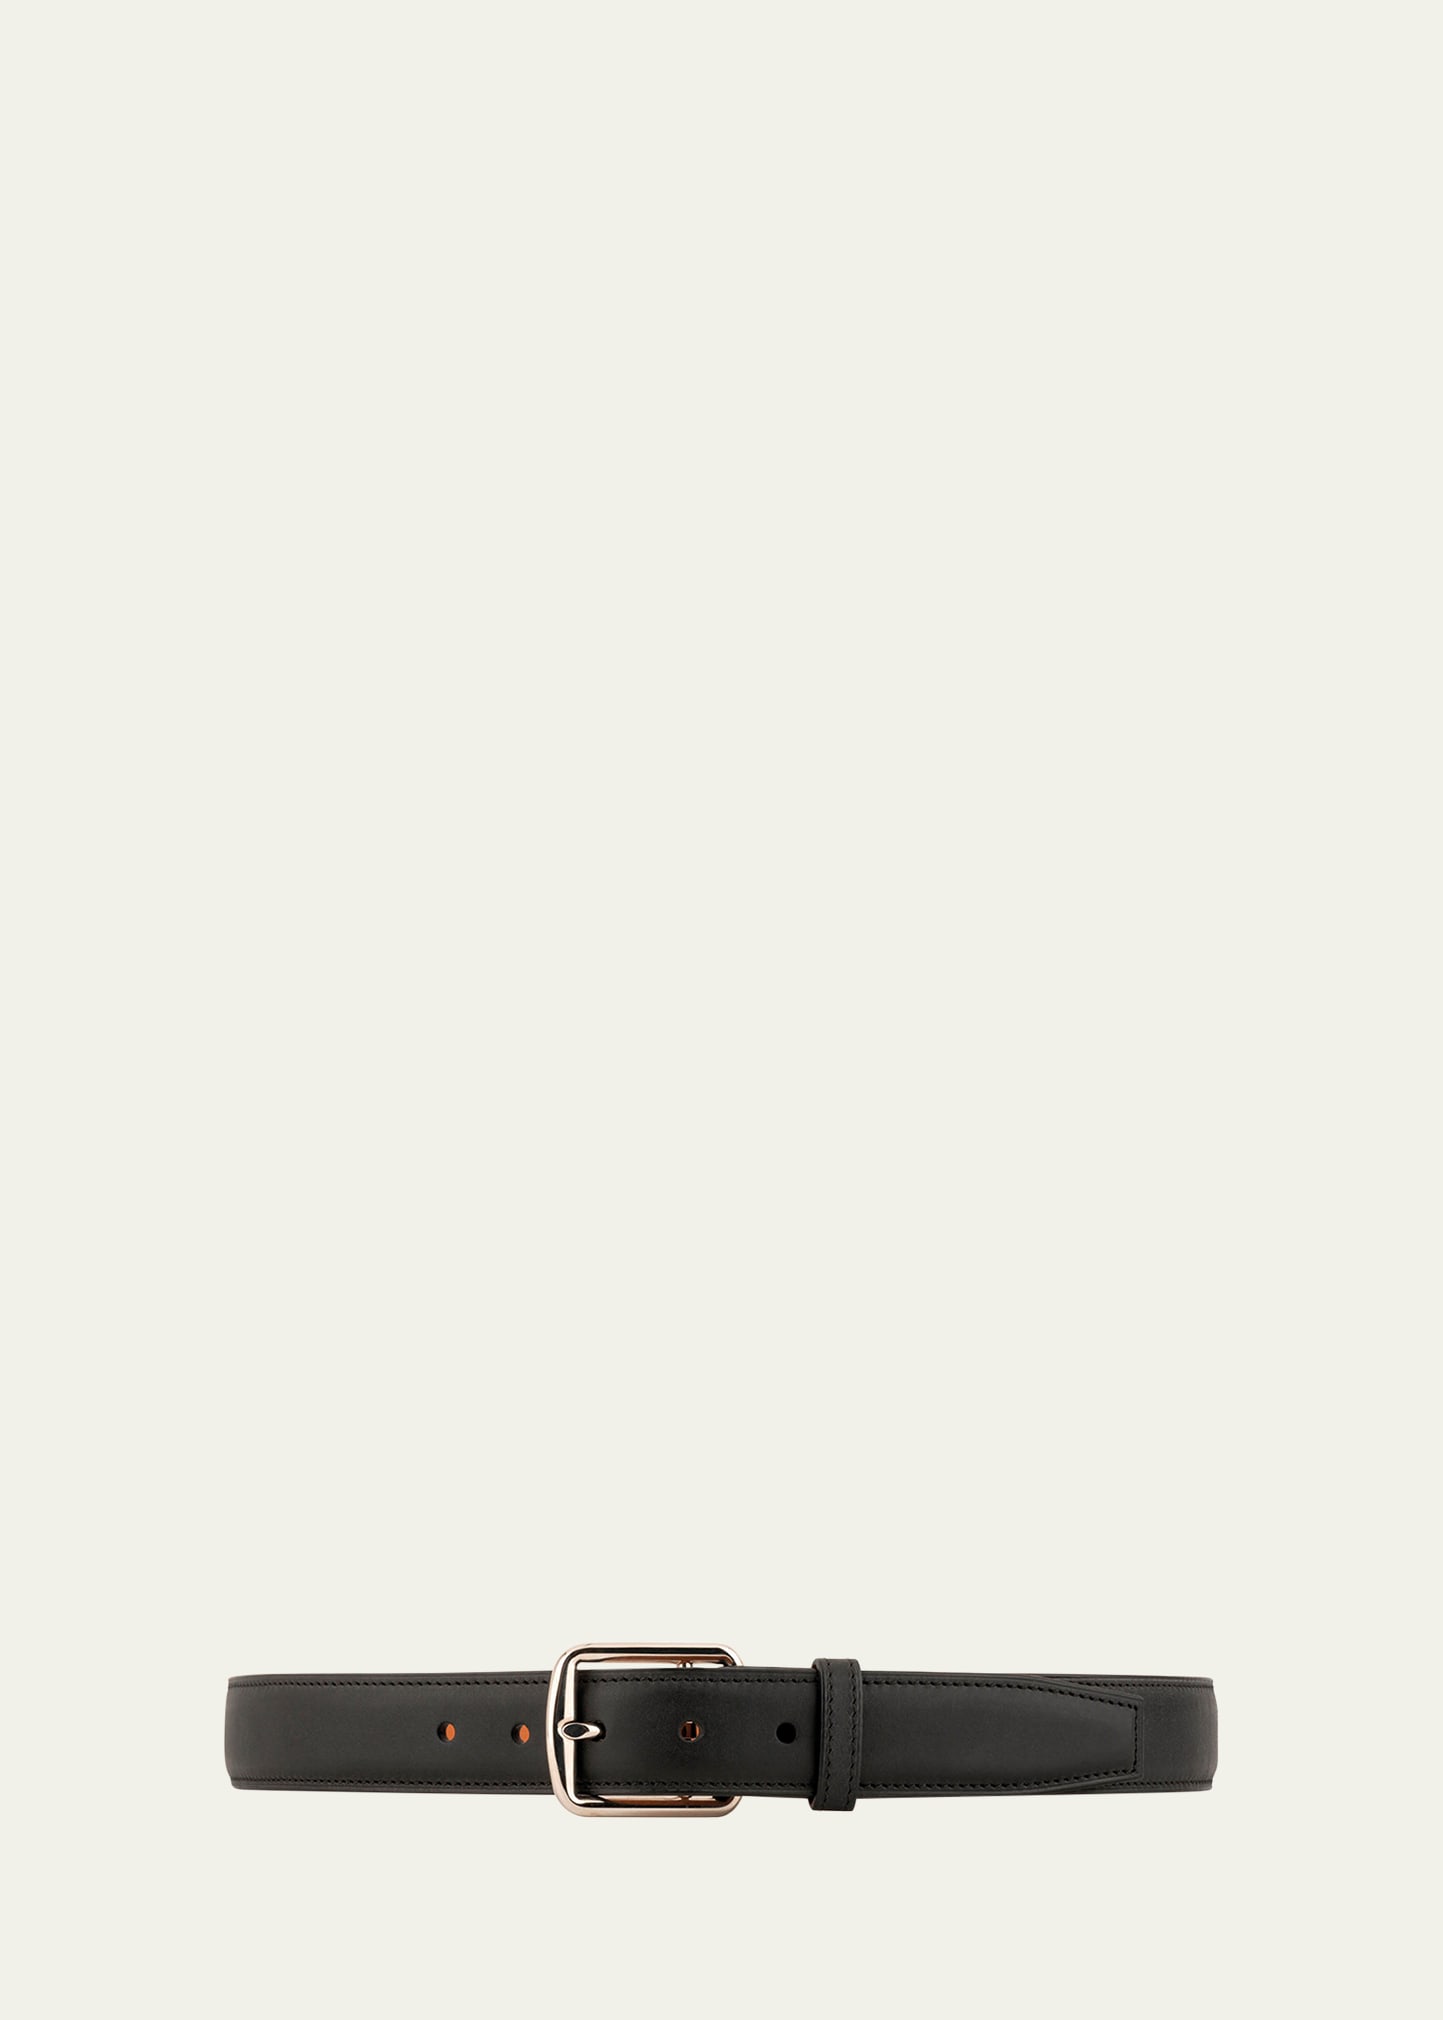 Vaincourt Paris Men's Le Desirable Leather Belt In Black